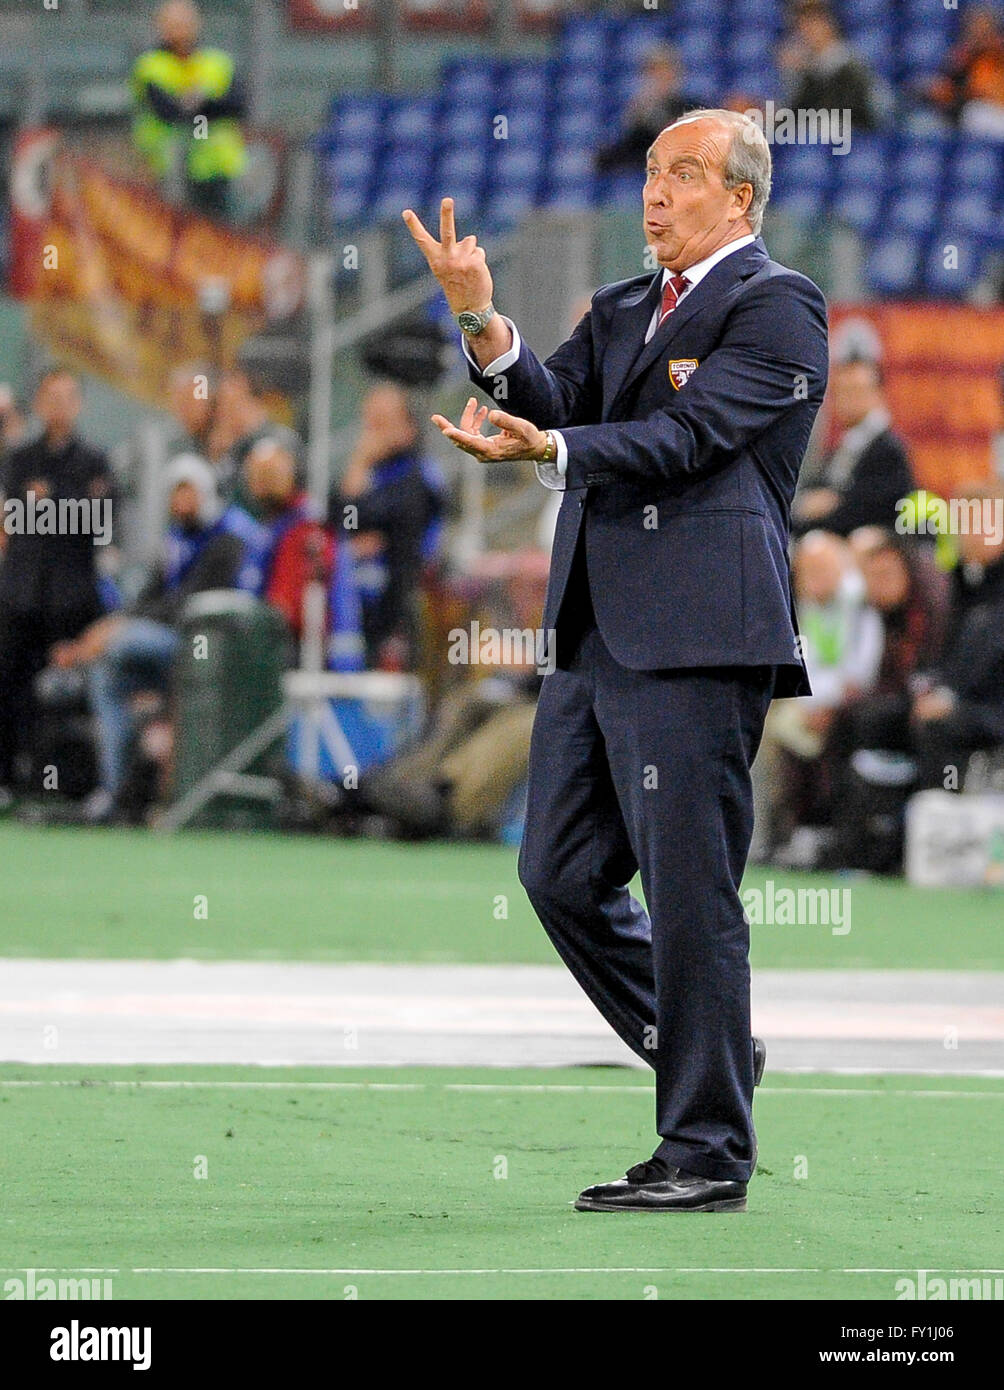 Rome, Italie. 20 avril, 2016 : Giampiero Ventura gestes au cours de la serie d'un match de football entre les Roms et le Torino FC. Credit : Nicolò Campo/Alamy Live News Banque D'Images